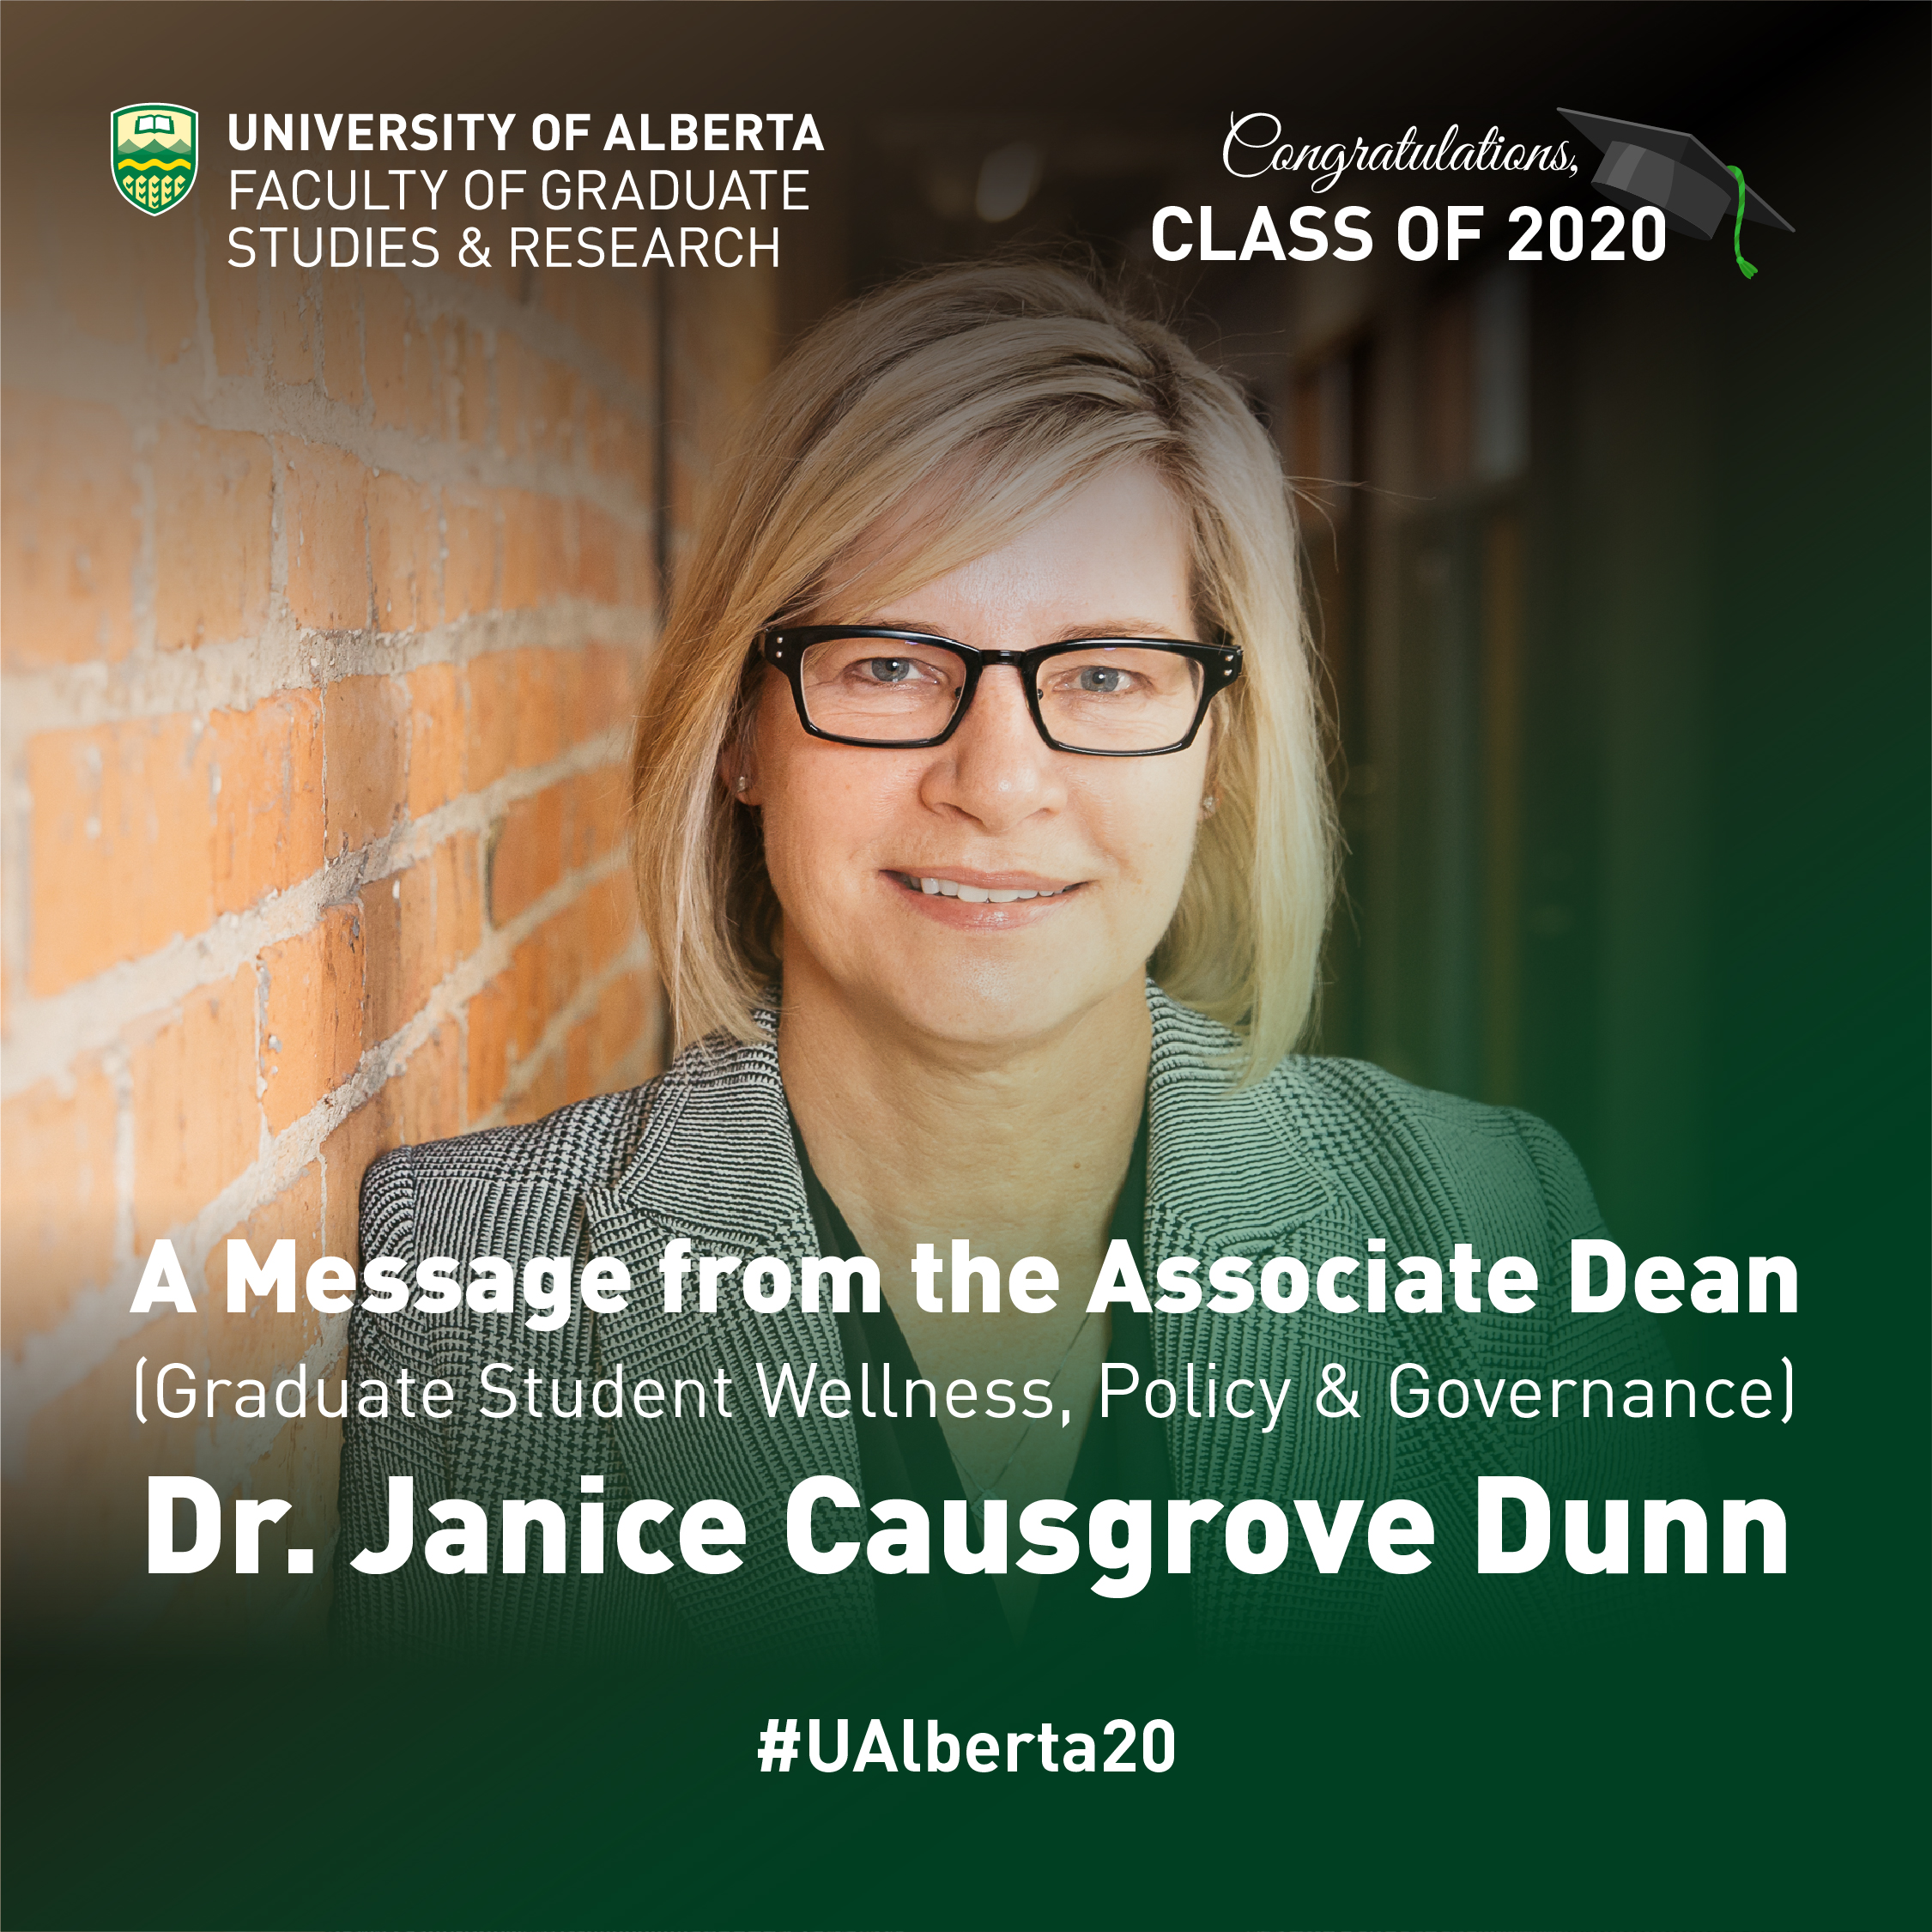 A Message from Dr. Janice Causgrove Dunn, FGSR Associate Dean (Graduate Student Wellness, Policy & Governance)